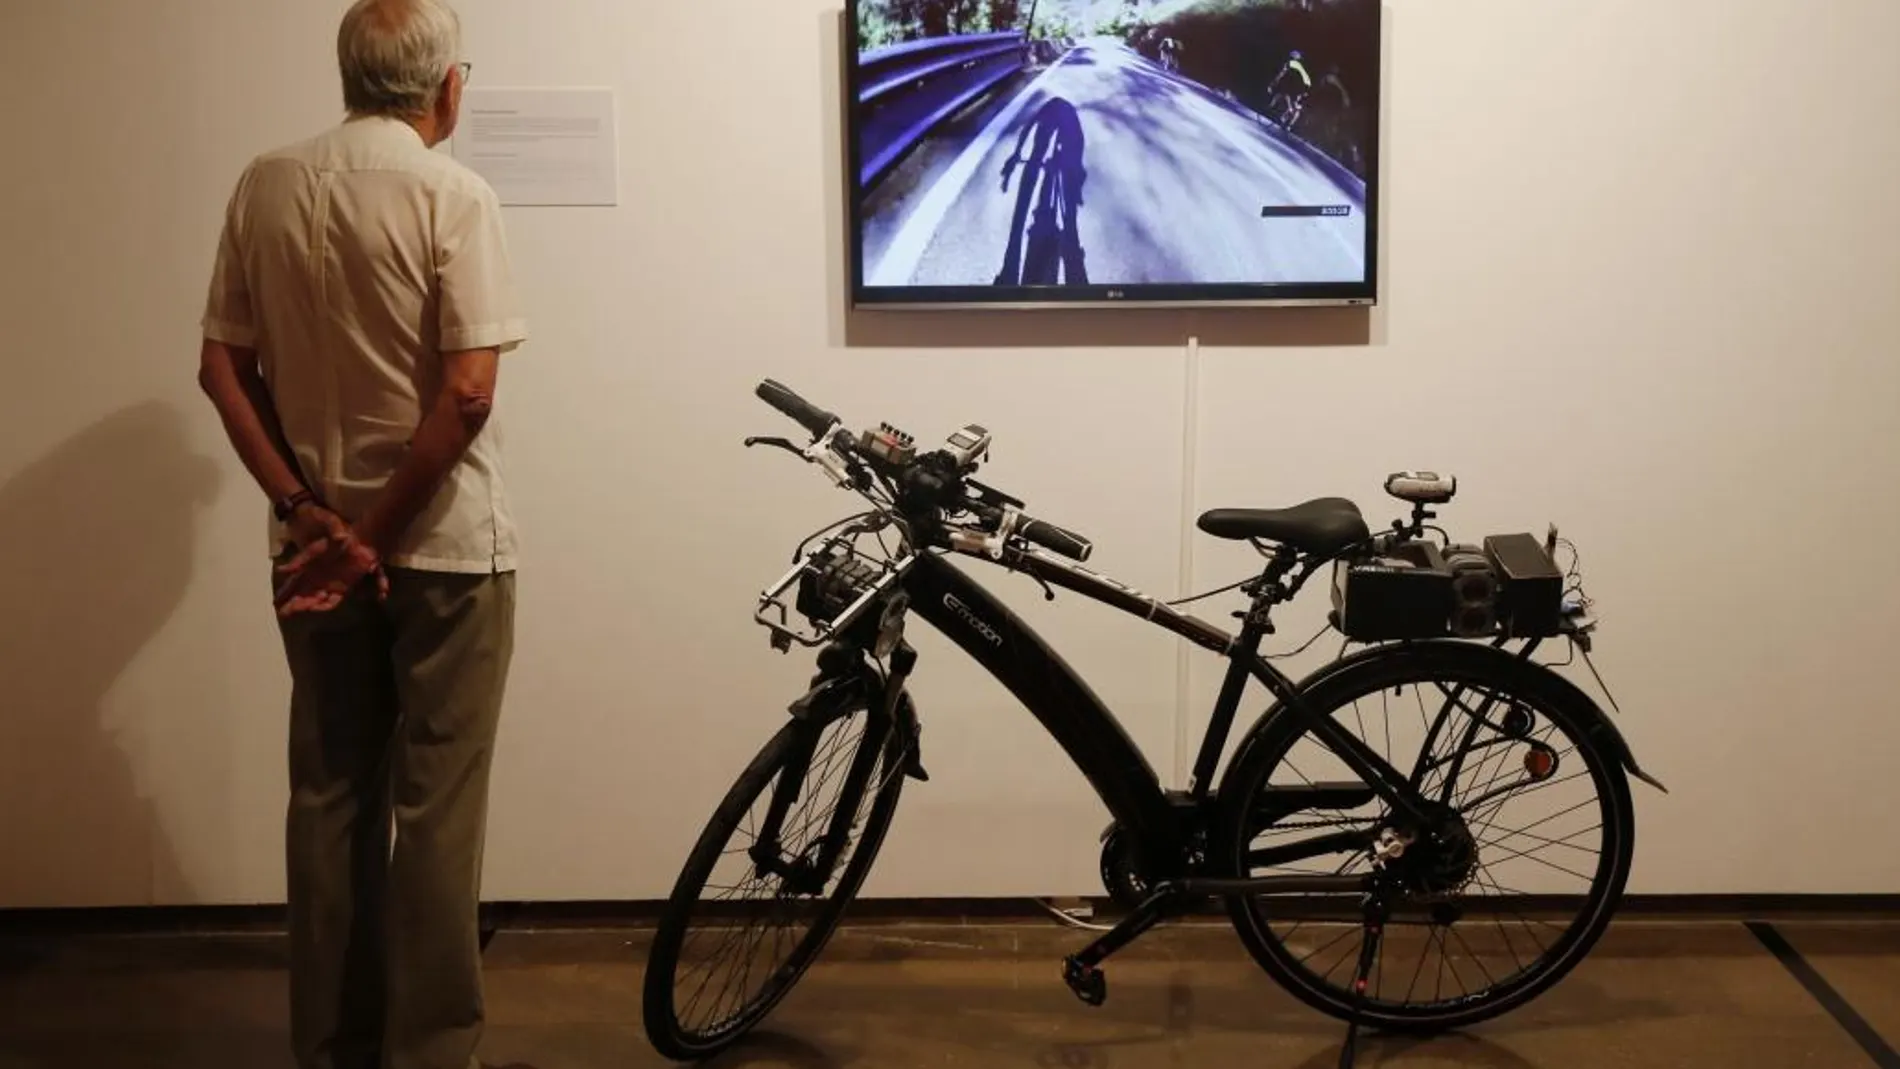 Una bicicleta instrumentalizada para evaluar la seguridad vial de los ciclistas y que les da más visibilidad en carretera es uno de los prototipos que presenta la Feria de los Inventos que inaugura la Univeridad Politécnica de València